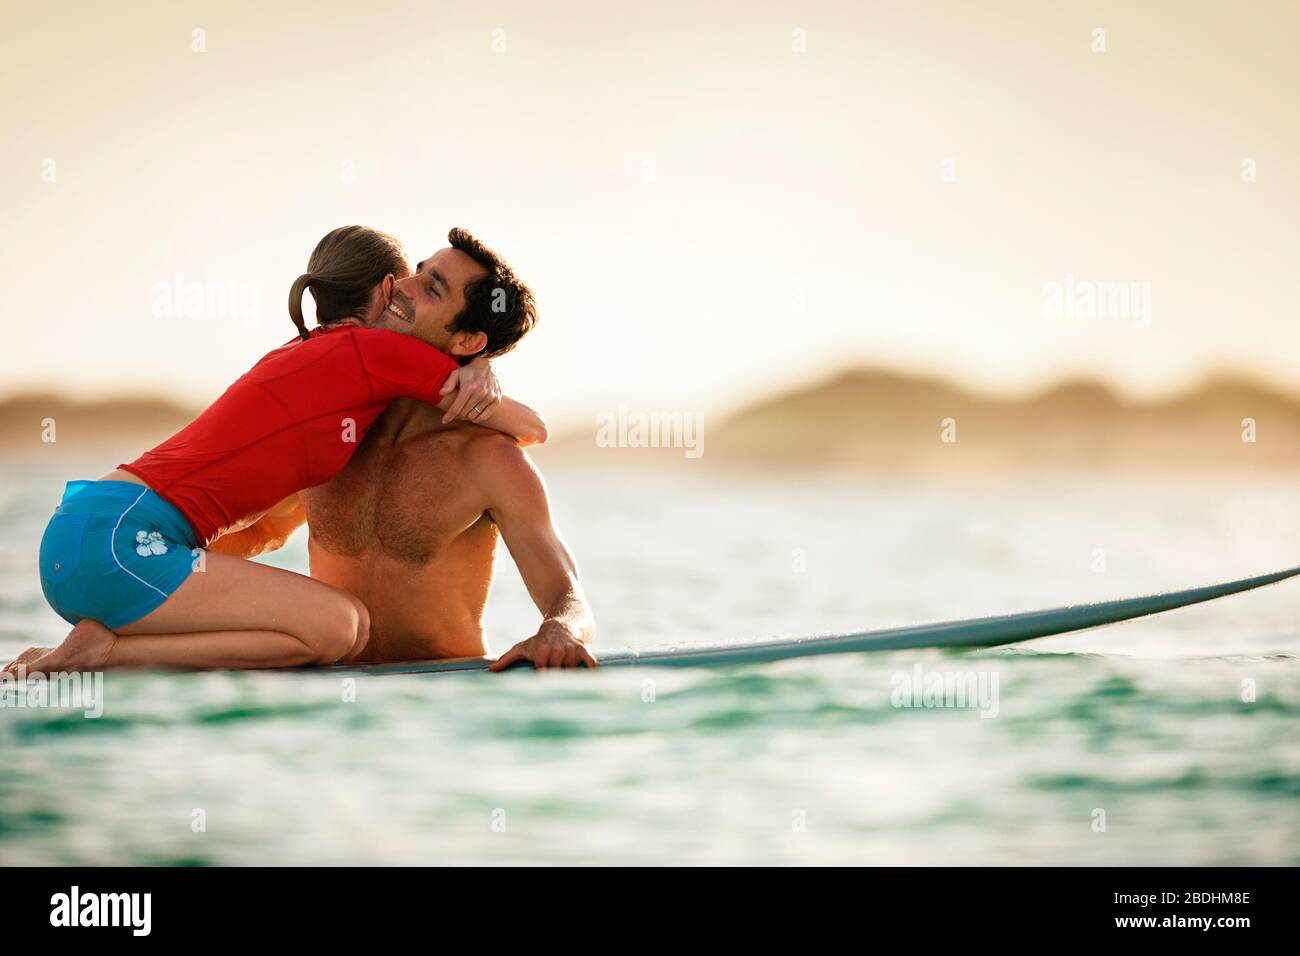 Frau kniet an einem Surfbrett und umarmte ihren Freund. Stockfoto